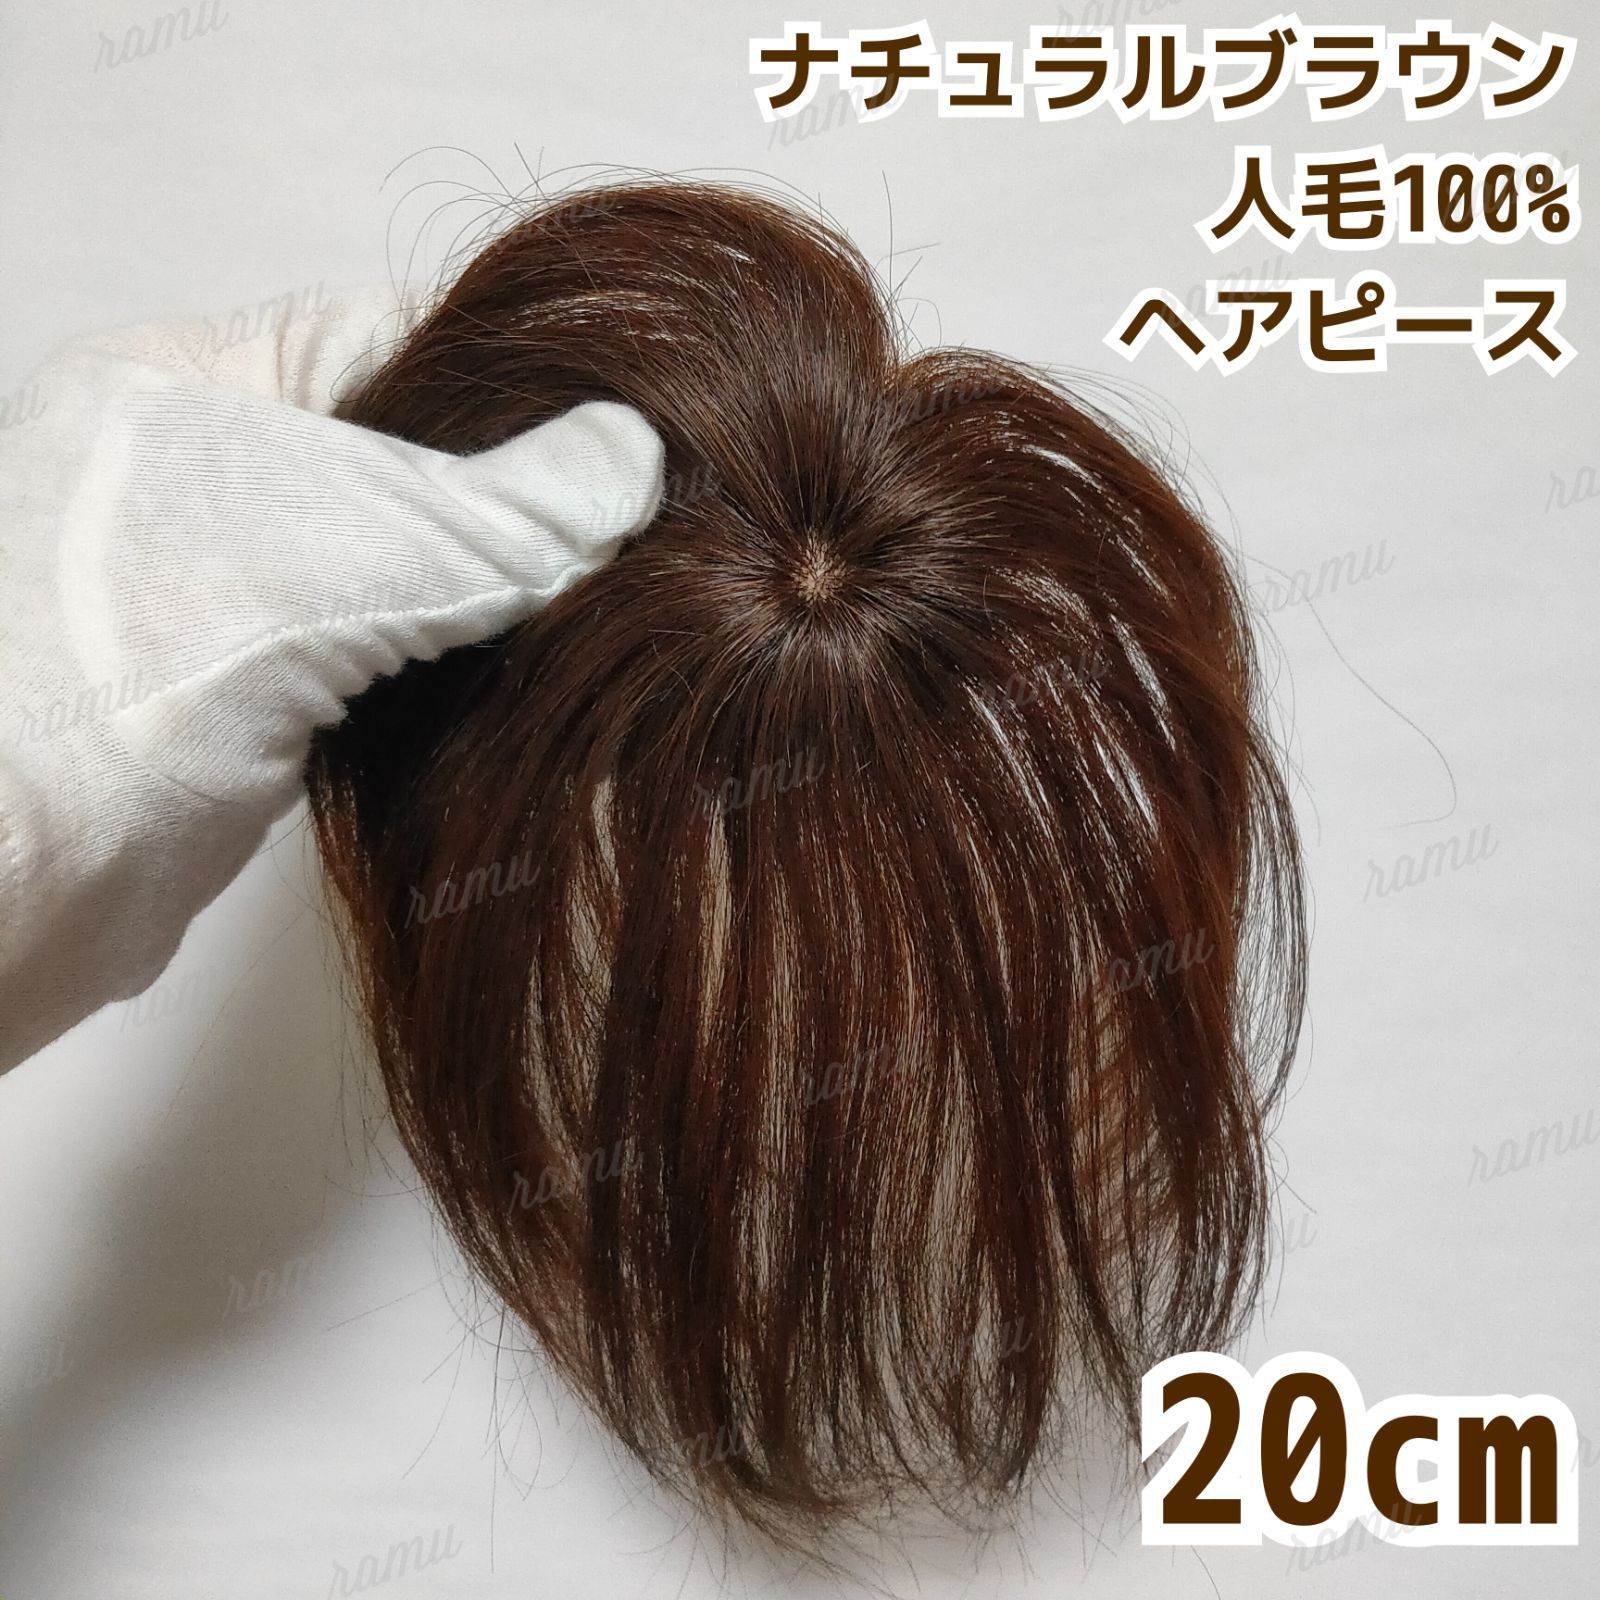 20cm ウィッグ 頭頂部 ブラウン 部分かつら ヘアピース 自然 茶髪